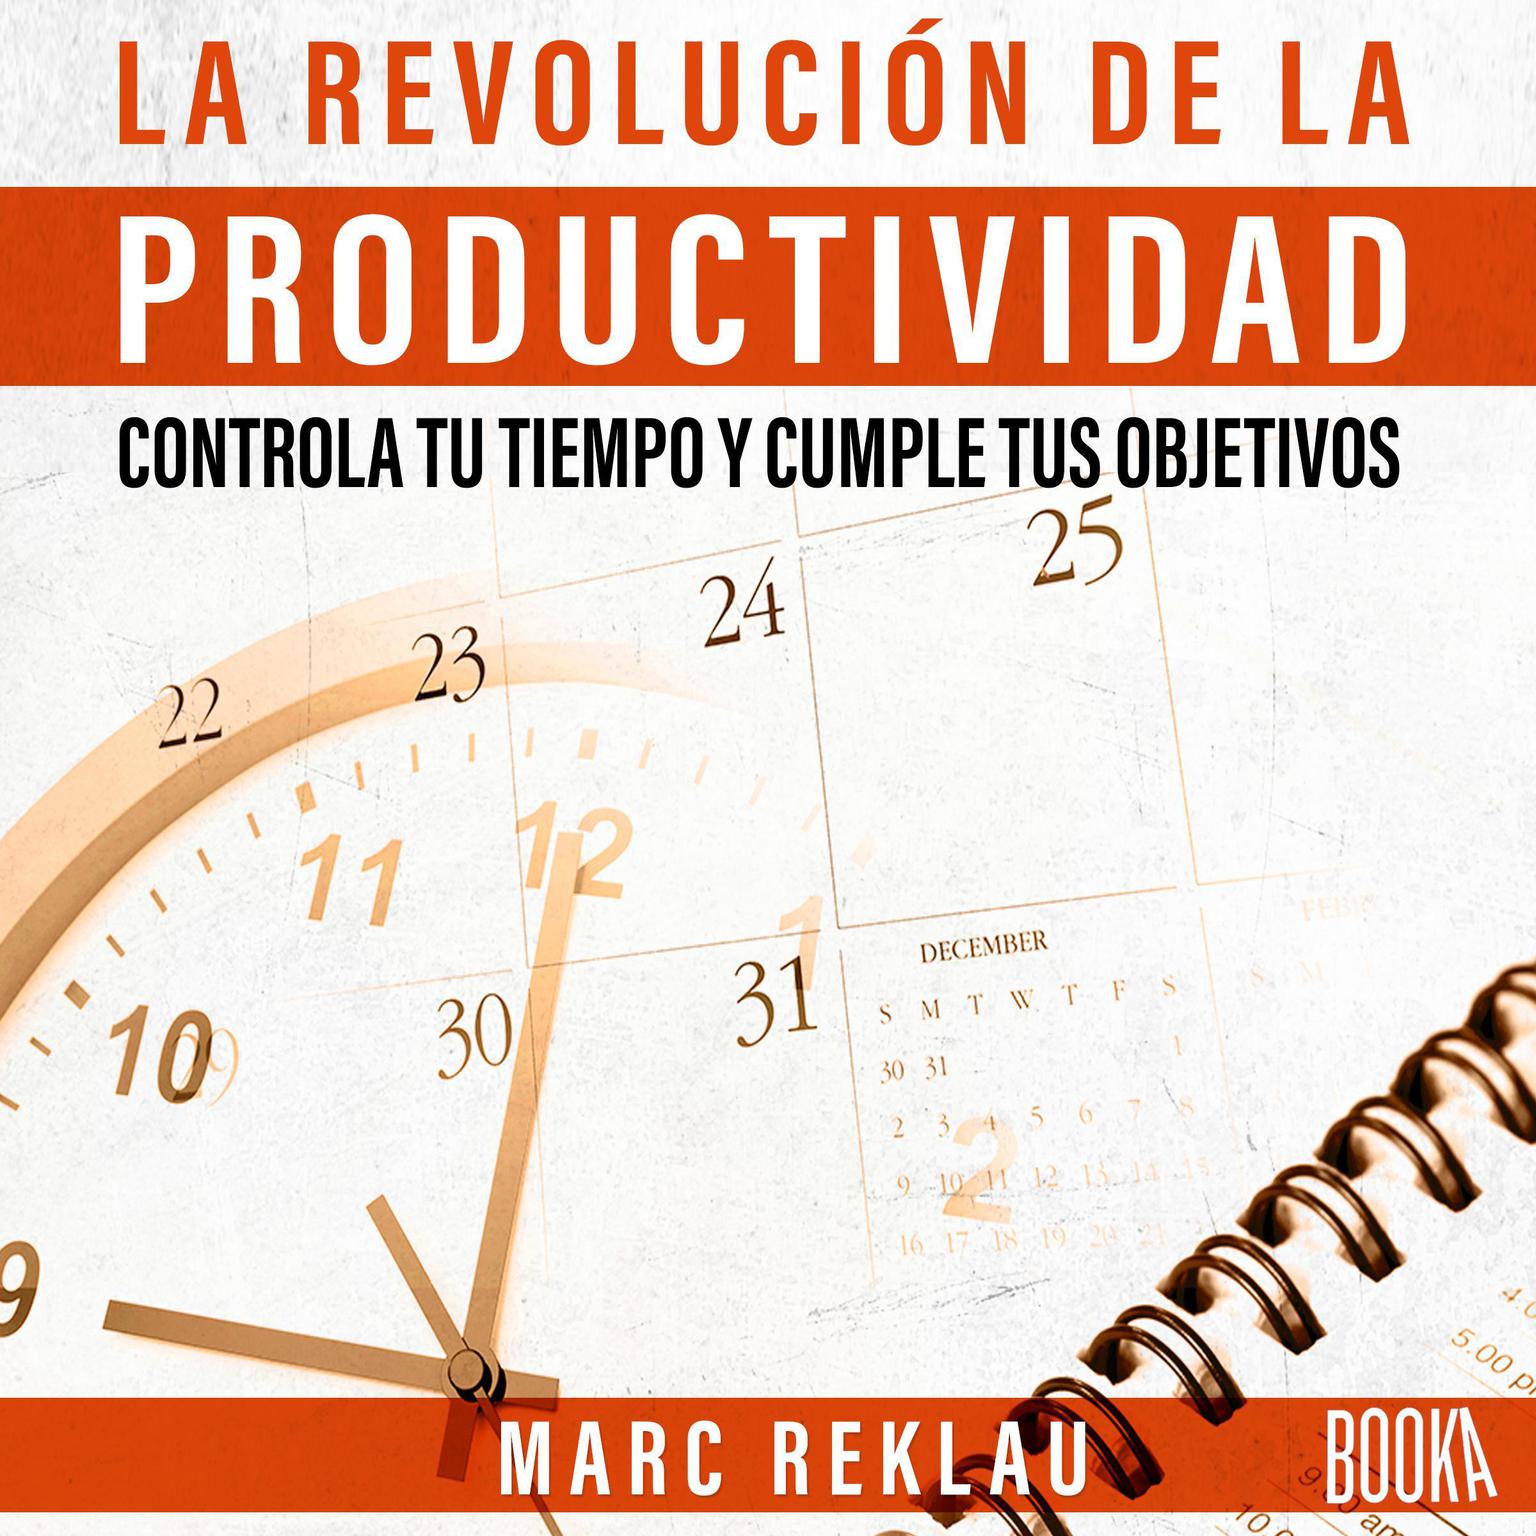 La Revolución de la Productividad Audiobook, by Marc Reklau